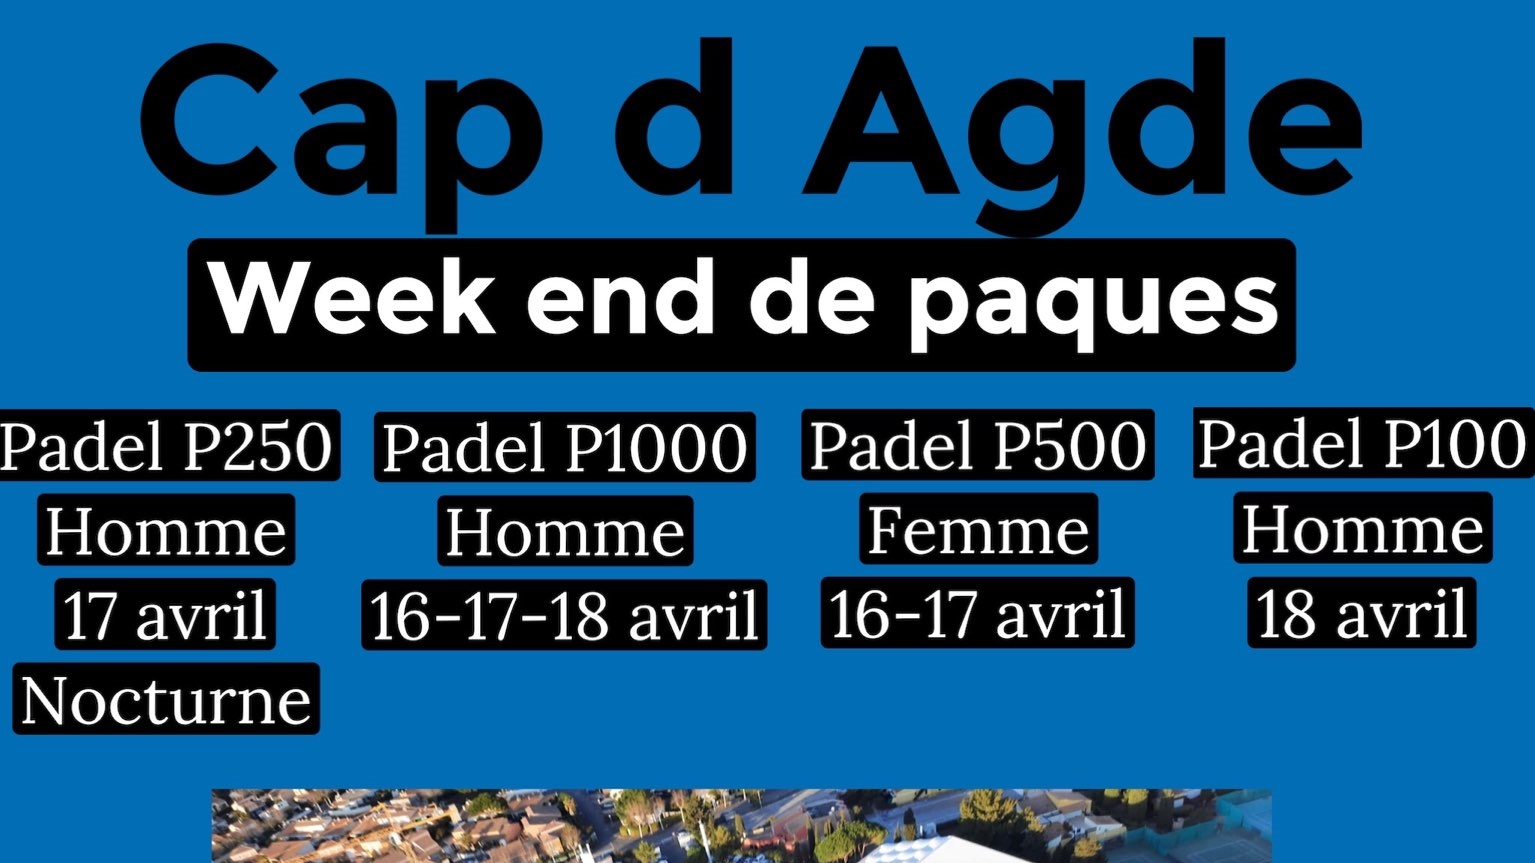 Cap d'Agde: P100 till P1000 från 16 till 18 april